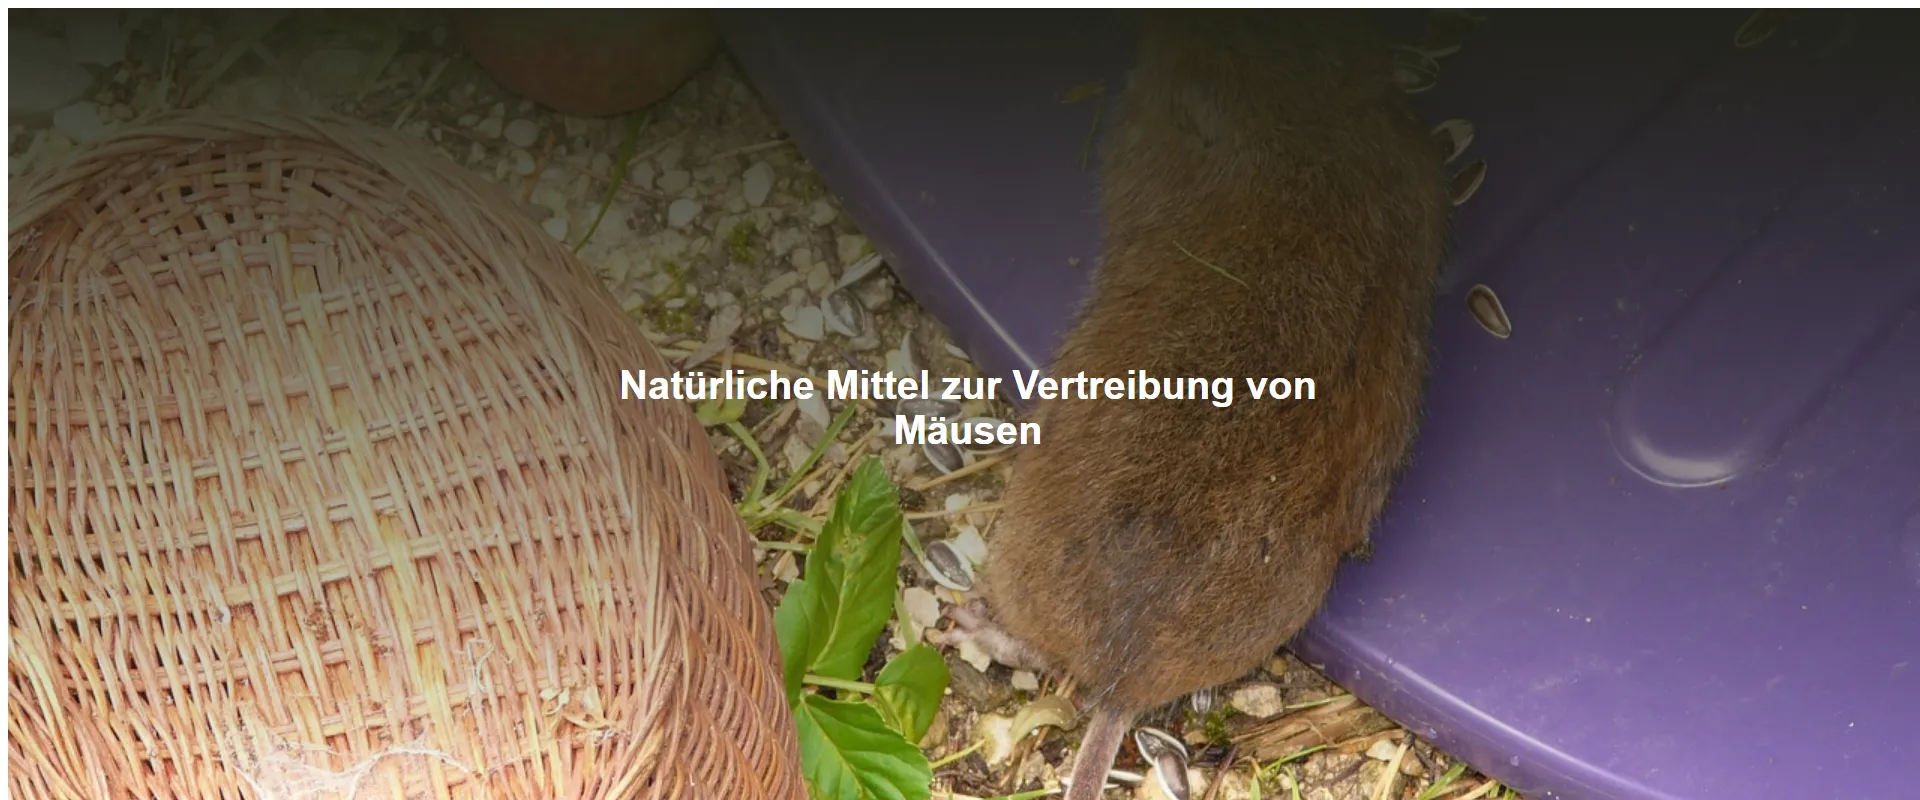 Natürliche Mittel zur Vertreibung von Mäusen